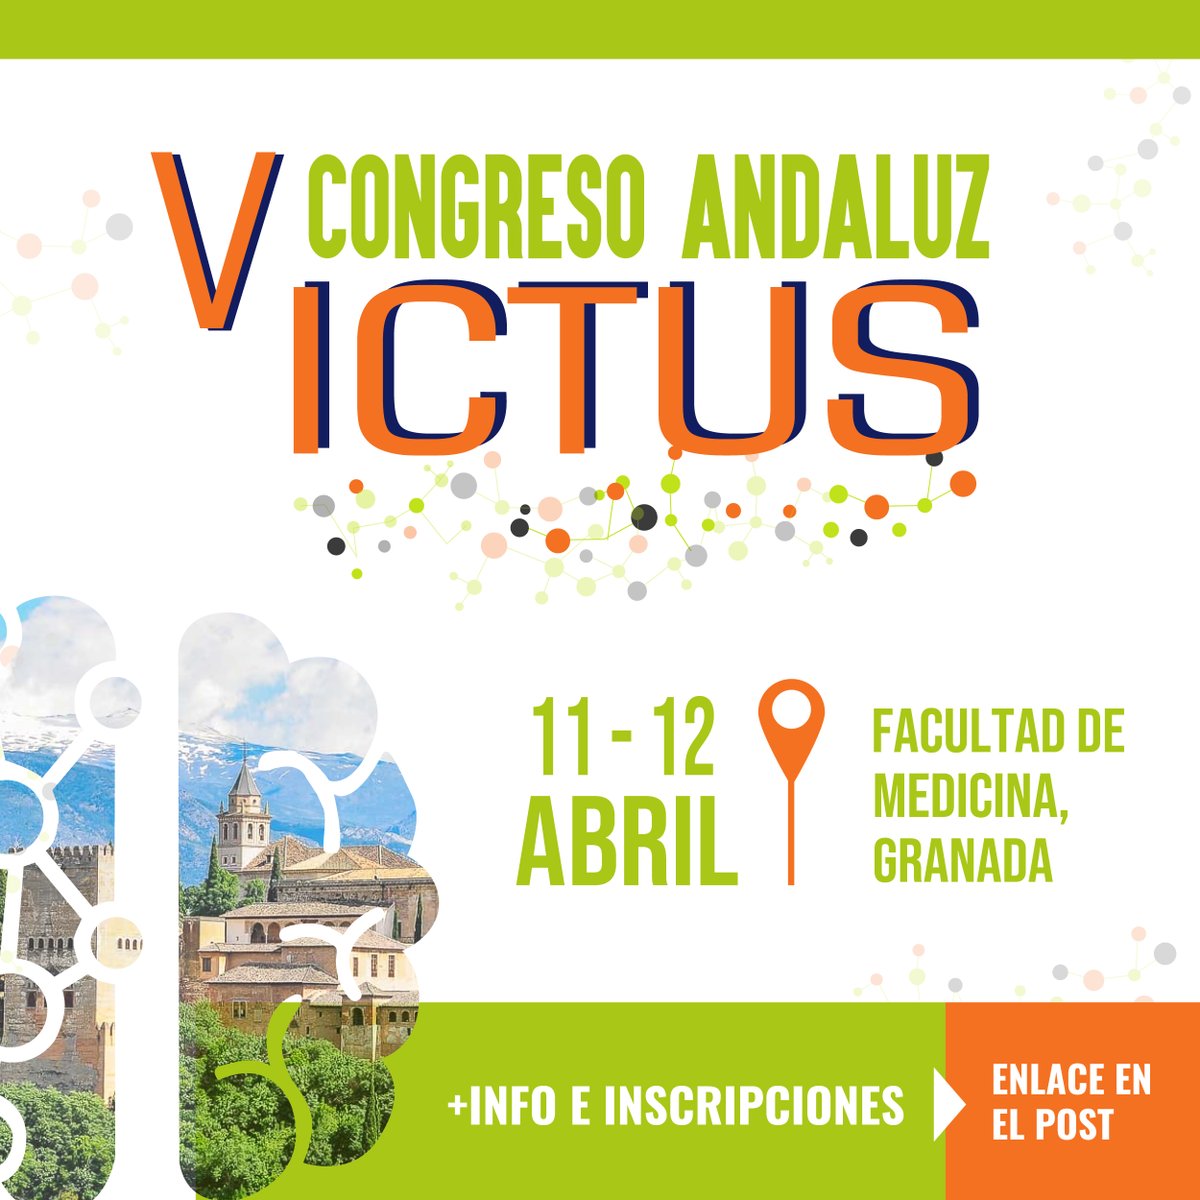 🧠Los próximos 11-12 de abril se celebra el V Congreso Andaluz de Ictus organizado por el Plan Andaluz de Atención al #Ictus coordinado por el Dr. Joan Montaner, Jefe del servicio de Neurología del @HUVMacarena 👉Inscríbete aquí: ictus-andalucia.com/v-congreso-and…